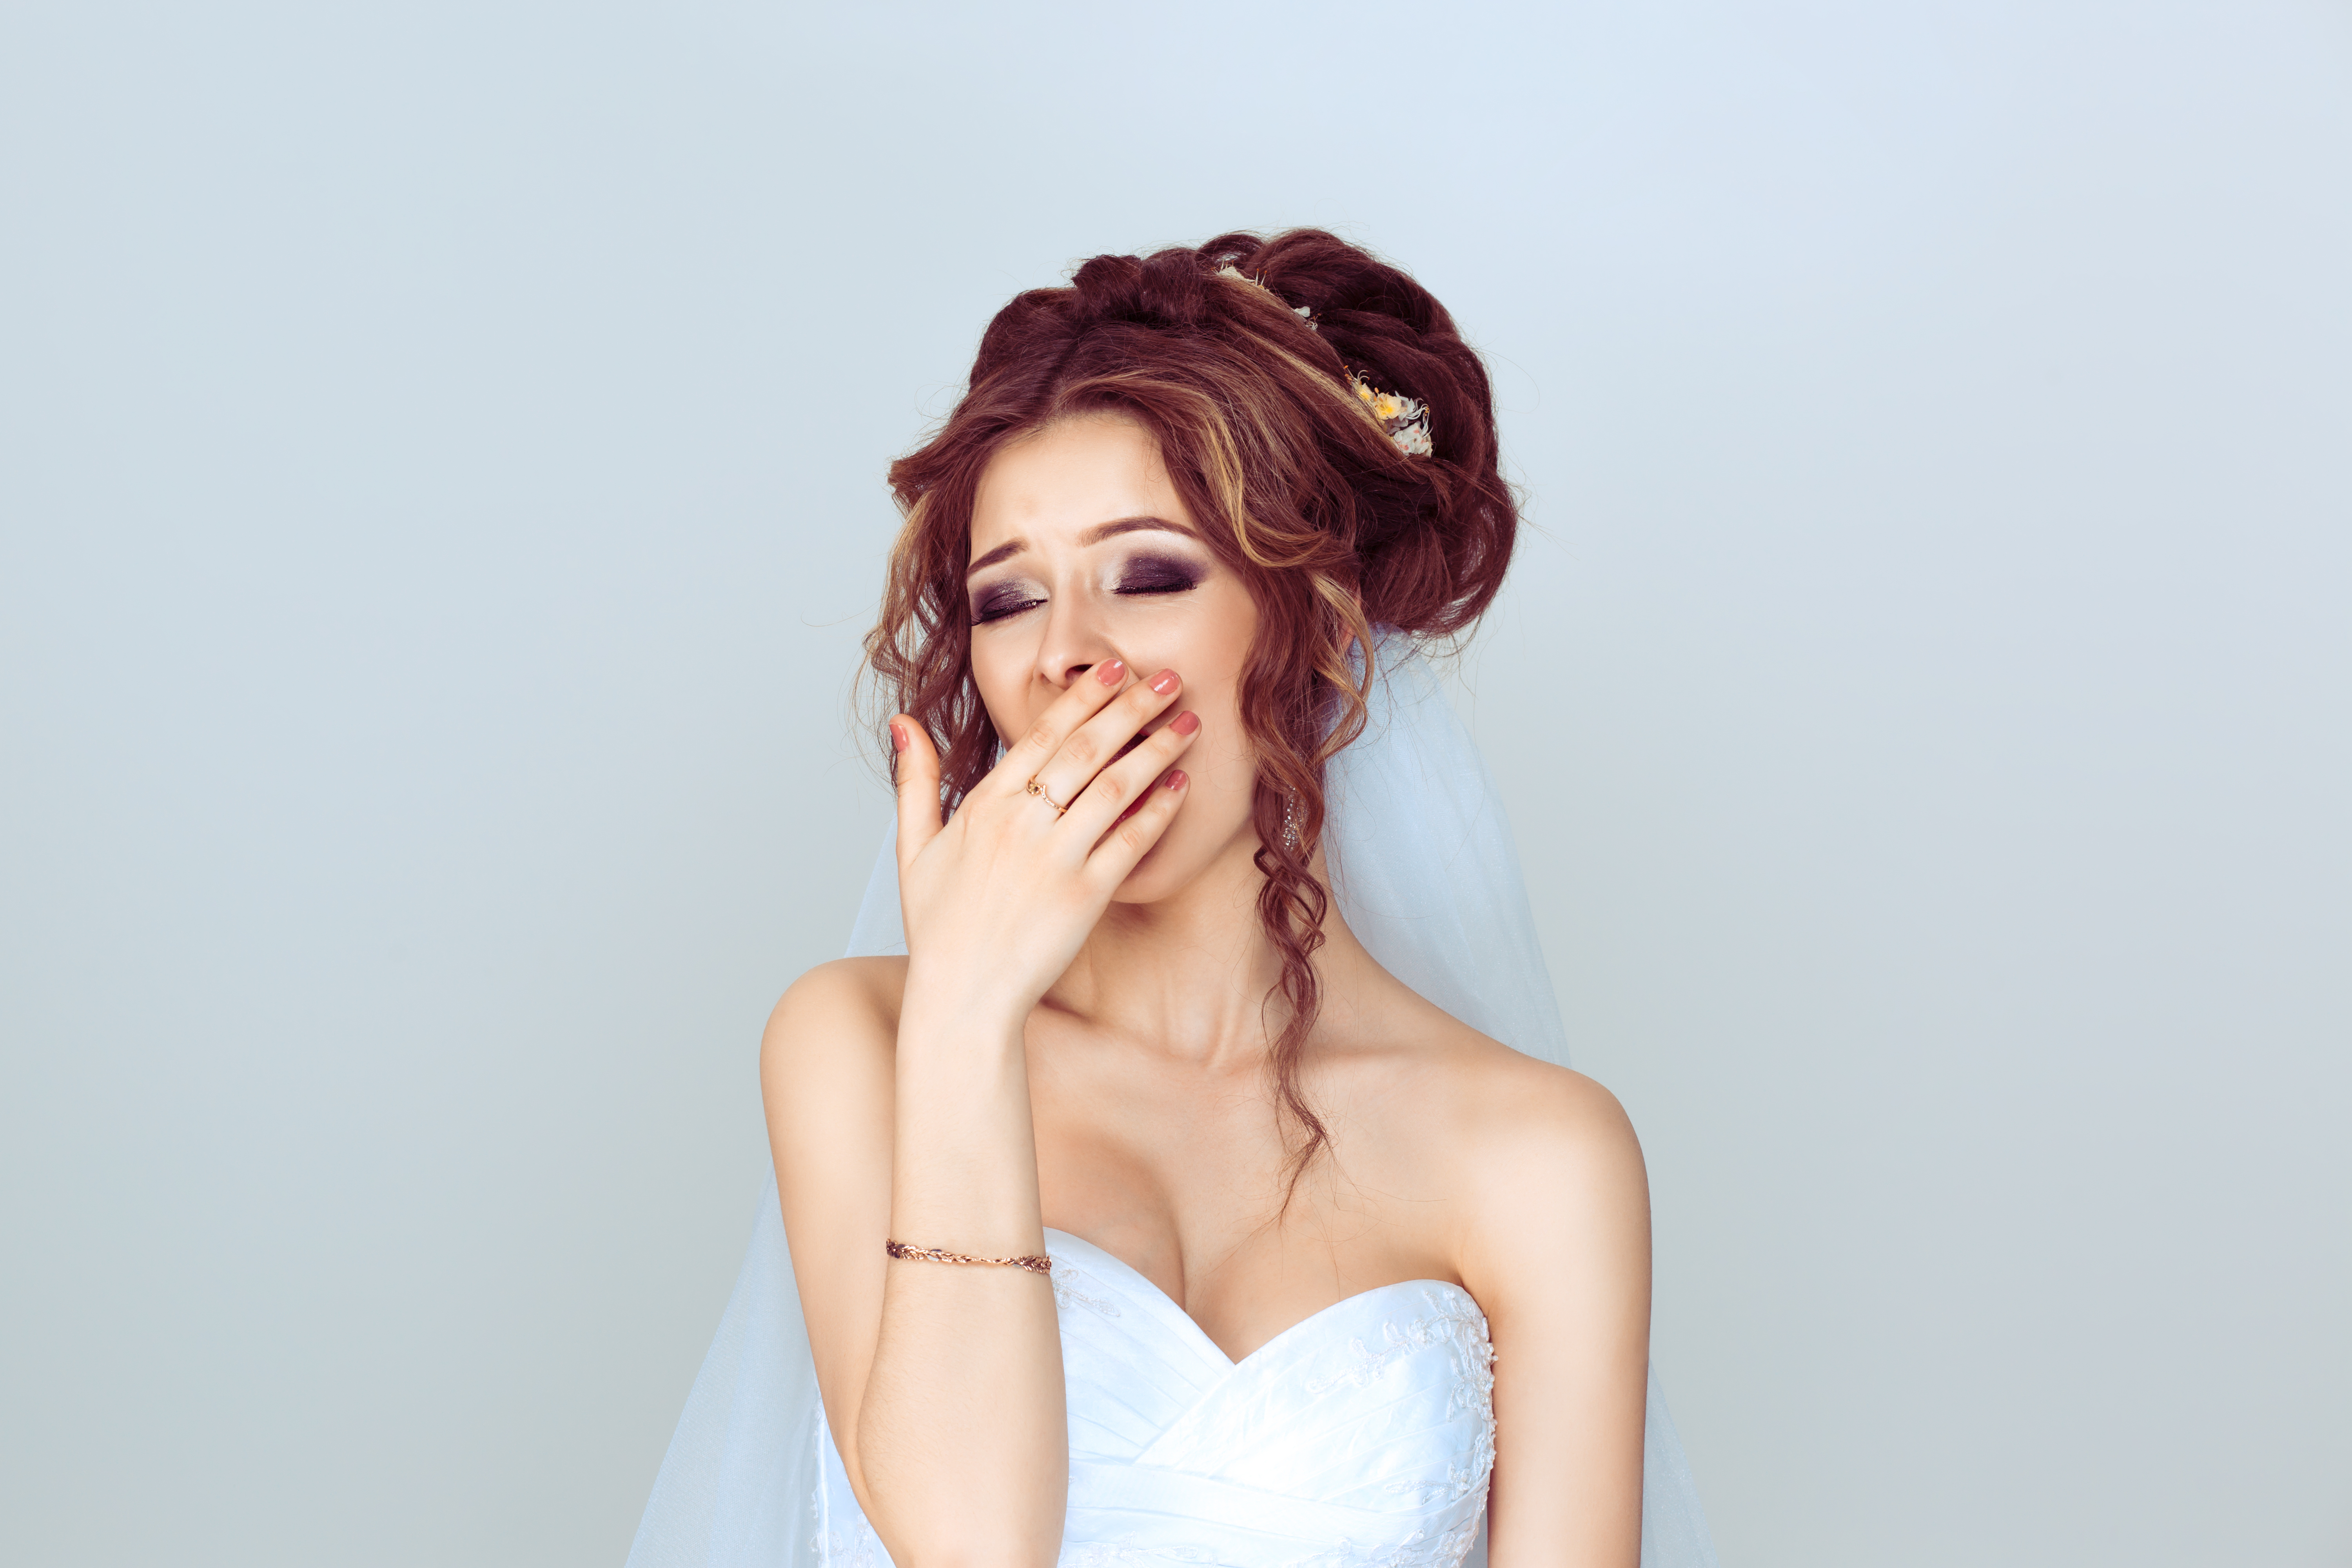 Une mariée se couvre la bouche en baillant | Source : Shutterstock